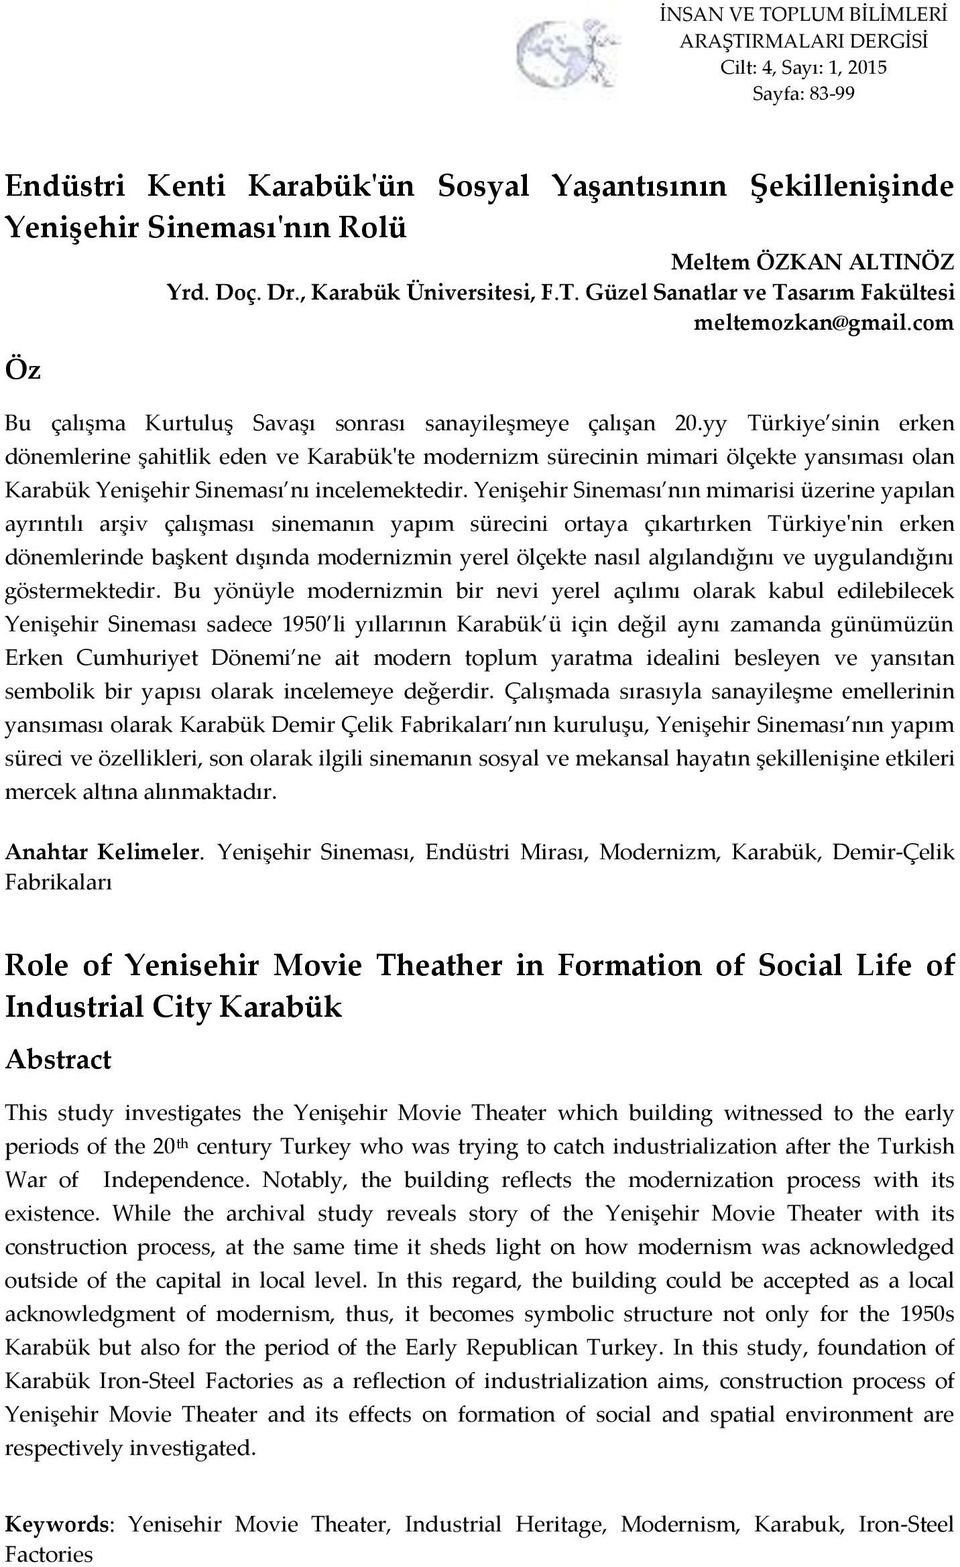 yy Türkiye sinin erken dönemlerine şahitlik eden ve Karabük'te modernizm sürecinin mimari ölçekte yansıması olan Karabük Yenişehir Sineması nı incelemektedir.